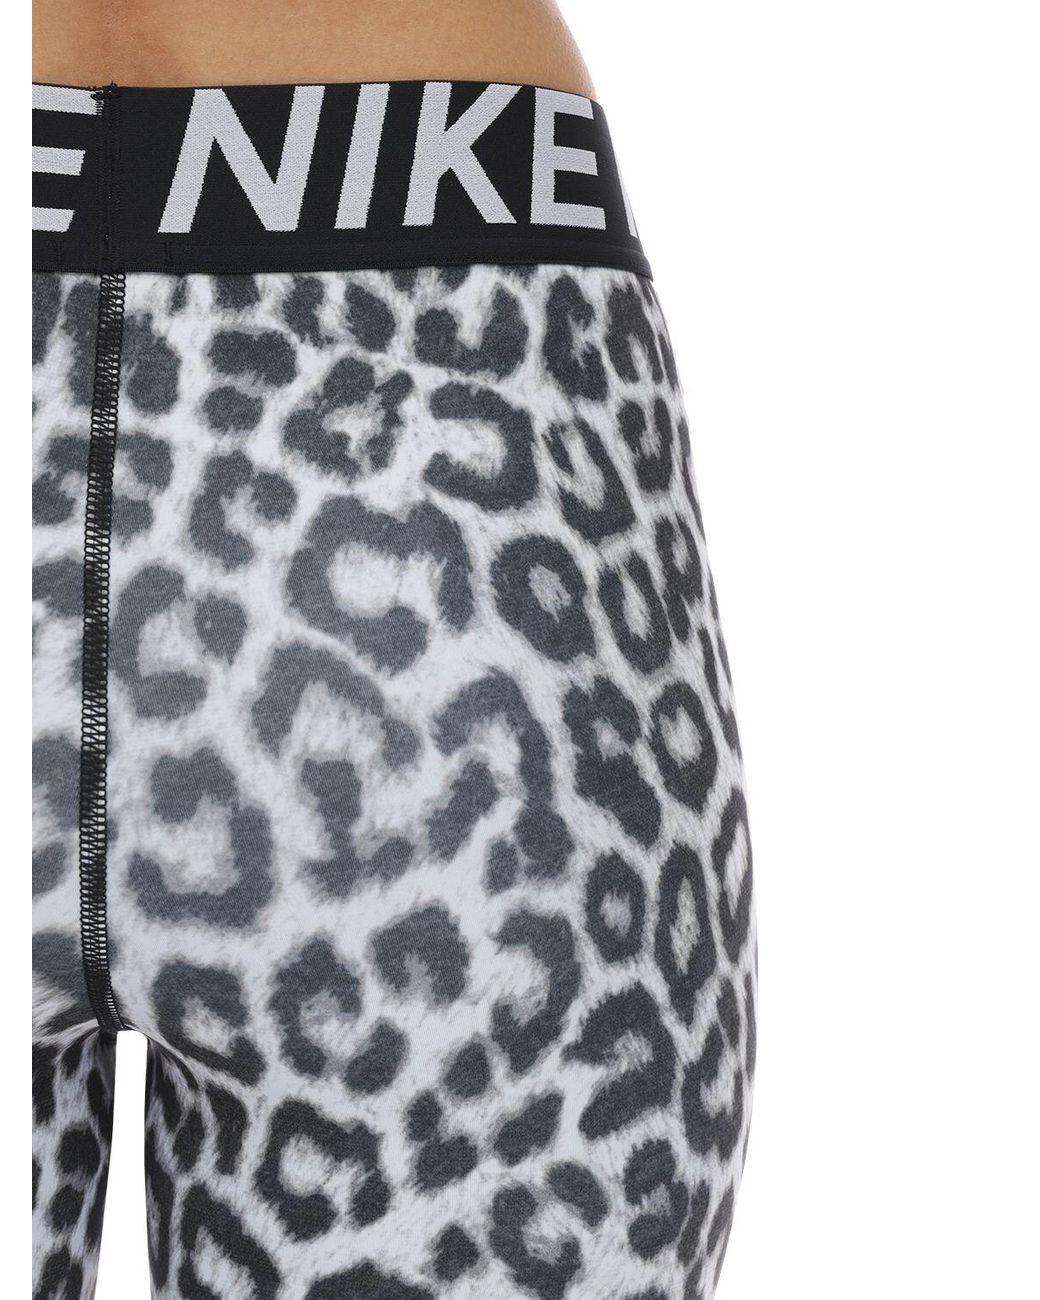 Nike Leopard Shorts in Black | Lyst